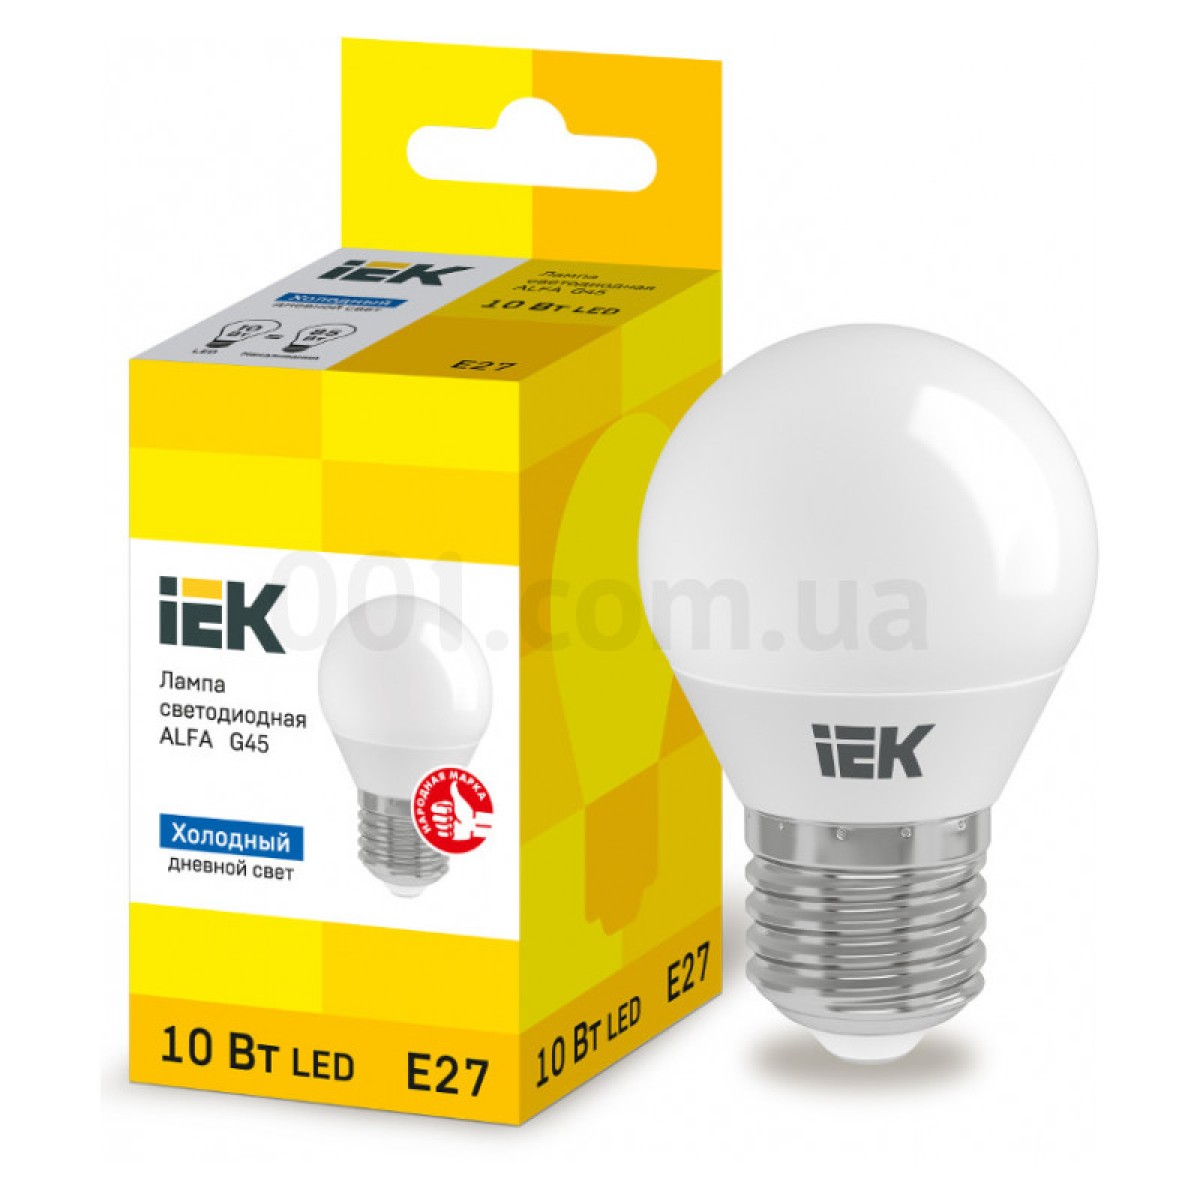 Світлодіодна лампа LED ALFA G45 (куля) 10 Вт 230В 6500К E27, IEK 256_256.jpg